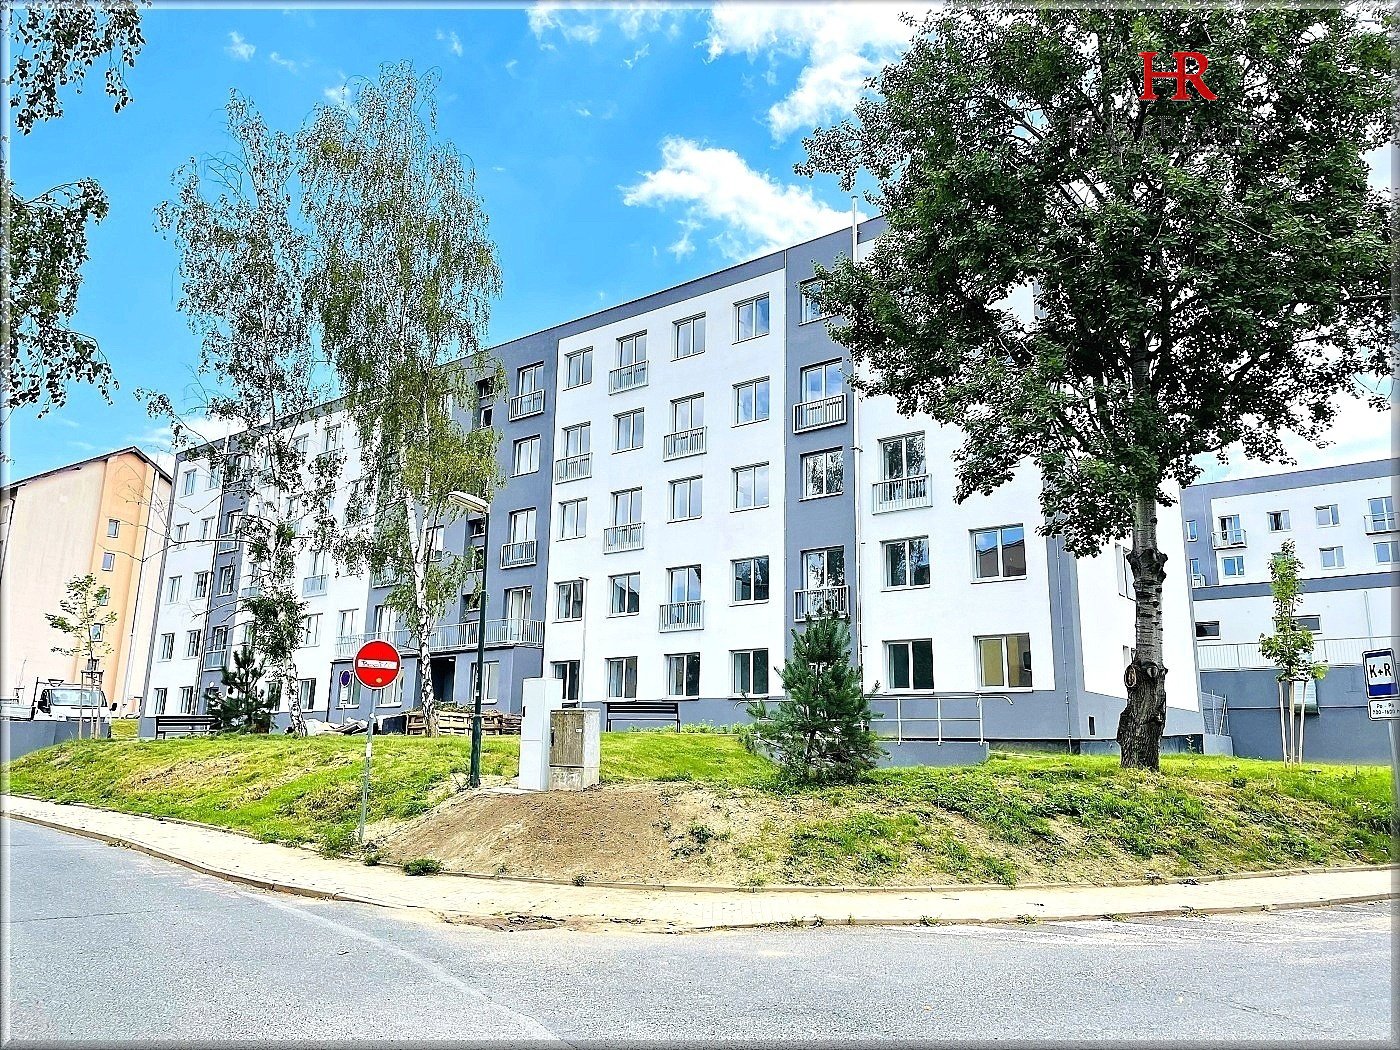 Prodej bytu 2+1, OV, 49 m2, balkón, park. stání, sklep, Milovice, okres Nymburk